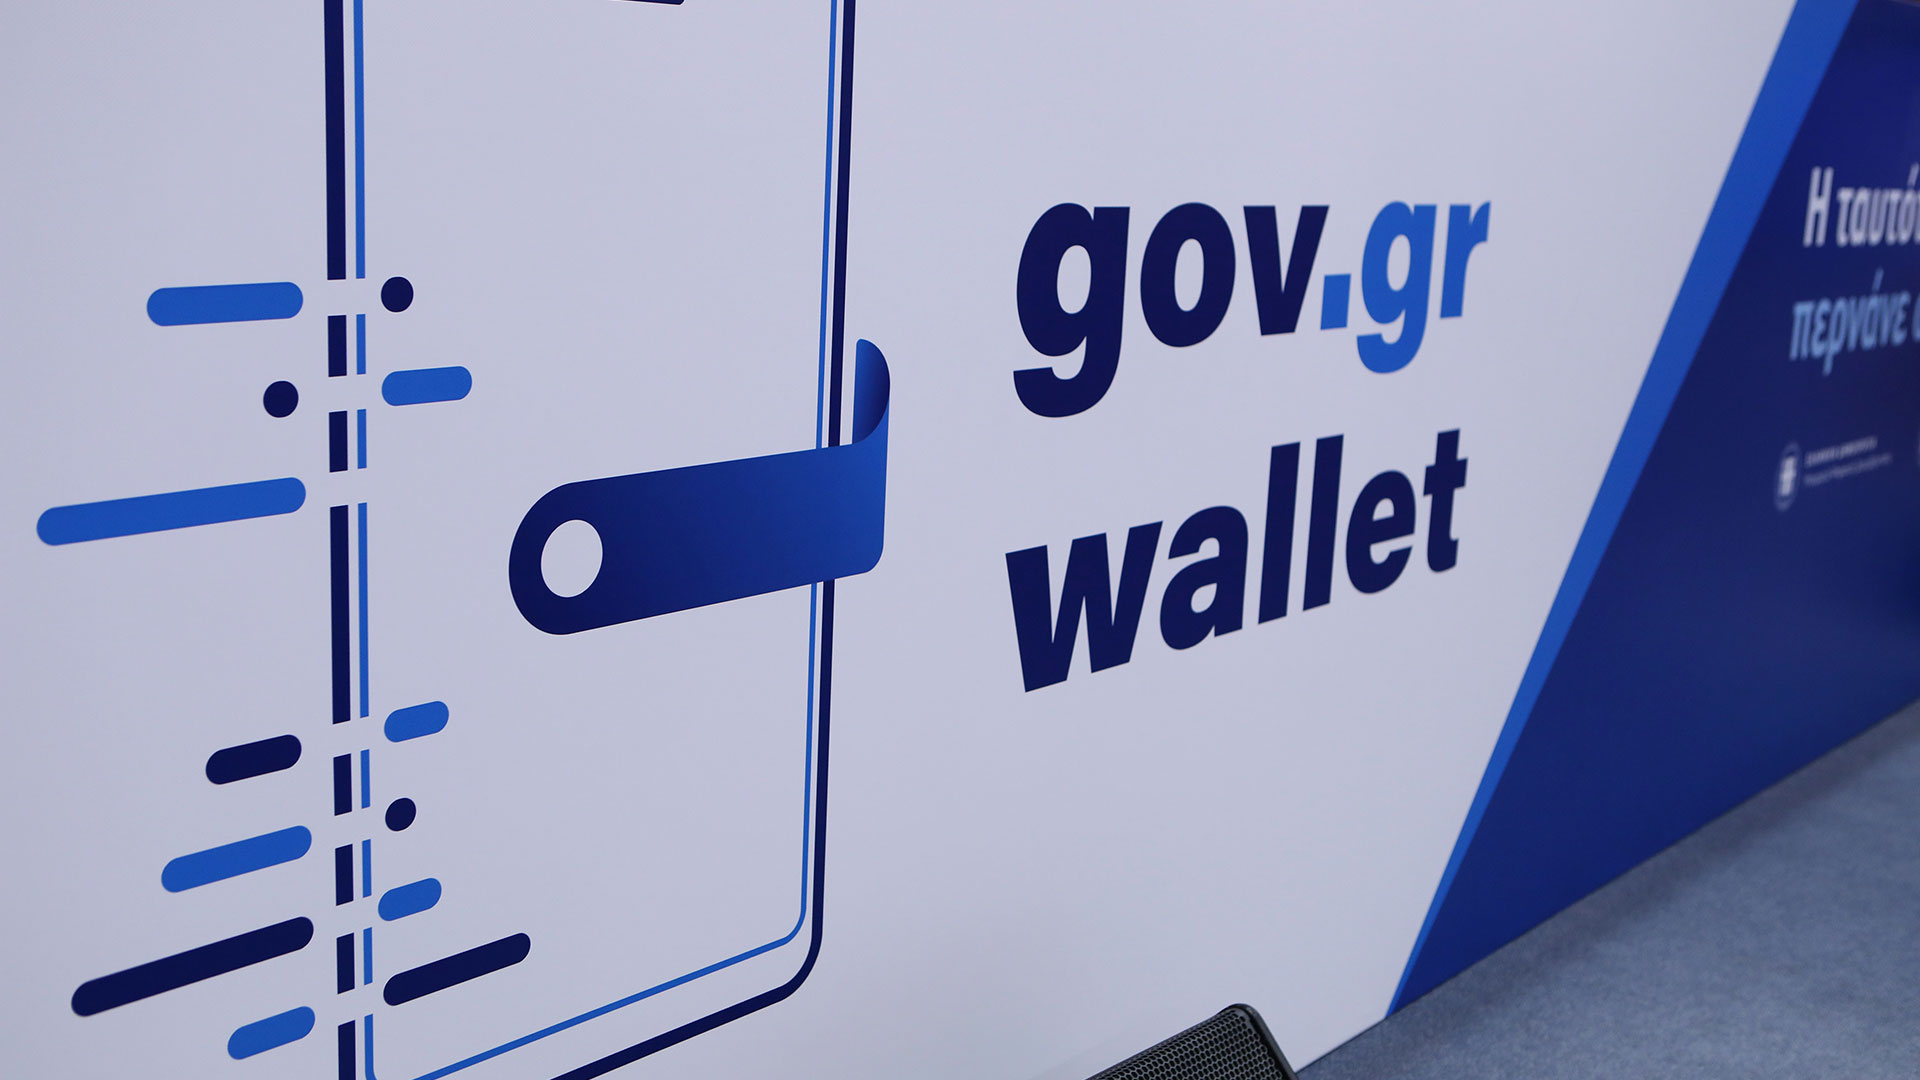 Οι 38 υπηρεσίες που προστέθηκαν στο gov.gr τον Δεκέμβριο